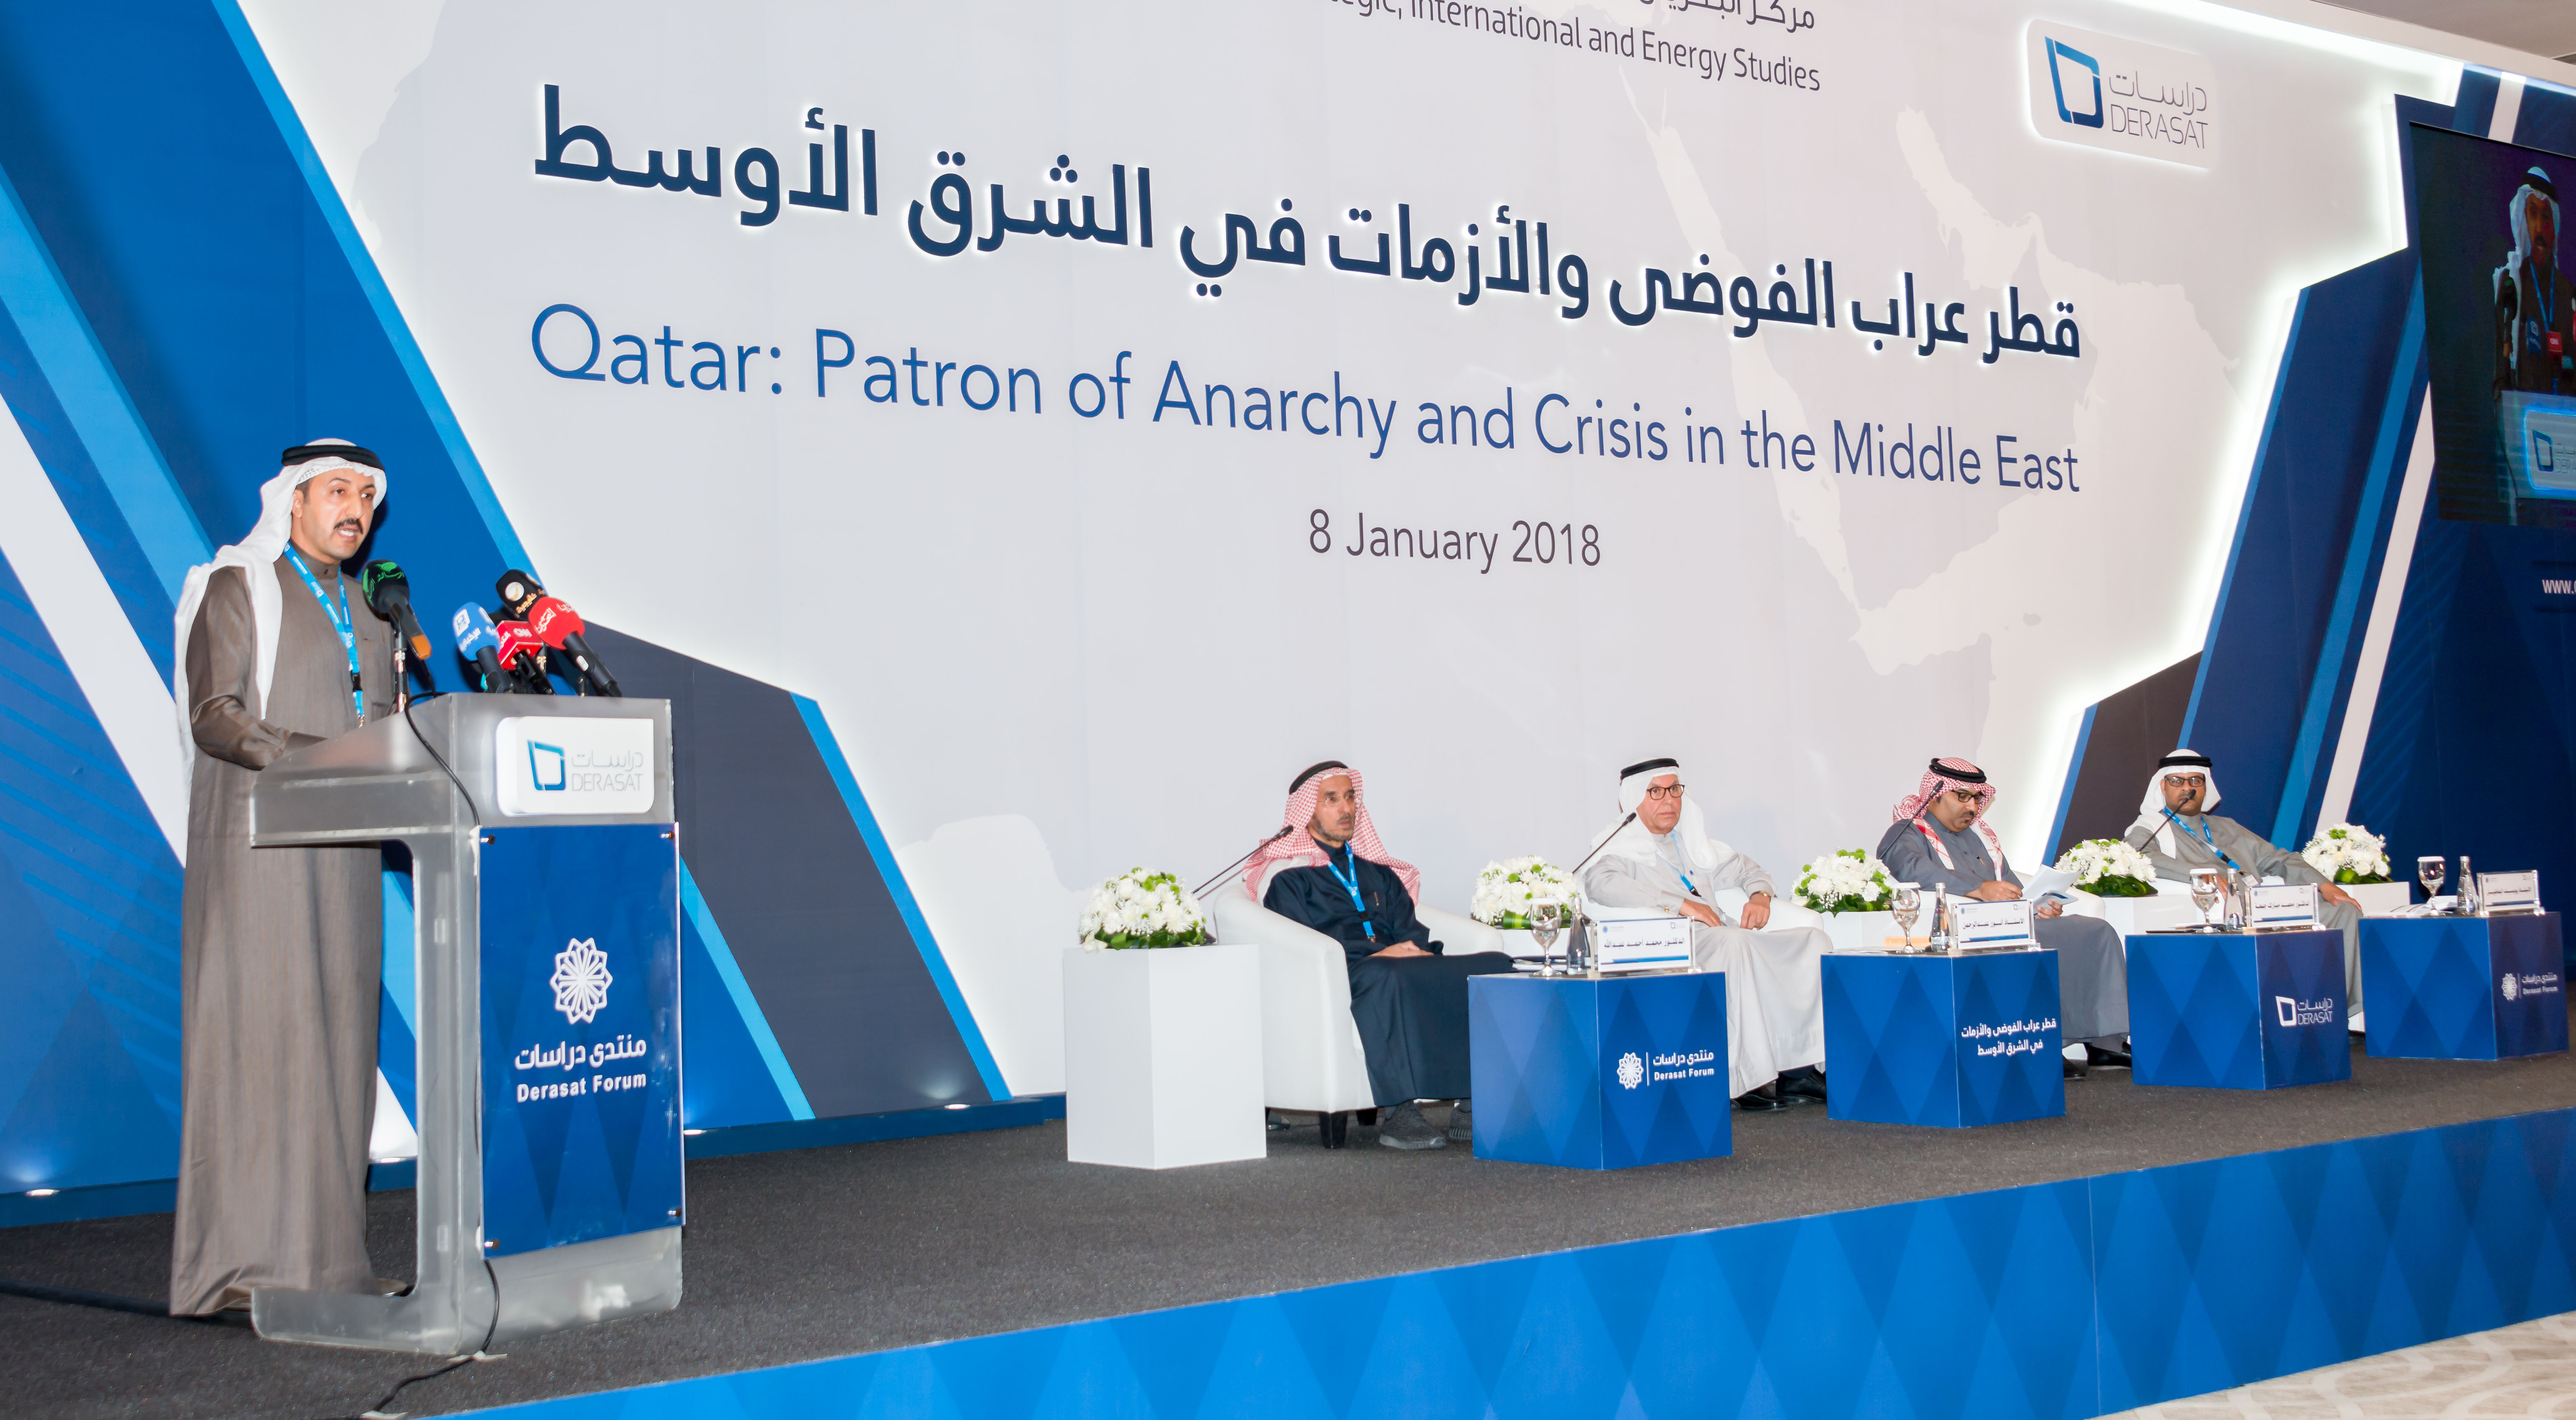 المنتدى الافتتاحي لدراسات: قطر: عراب الفوضى والأزمات في الشرق الأوسط